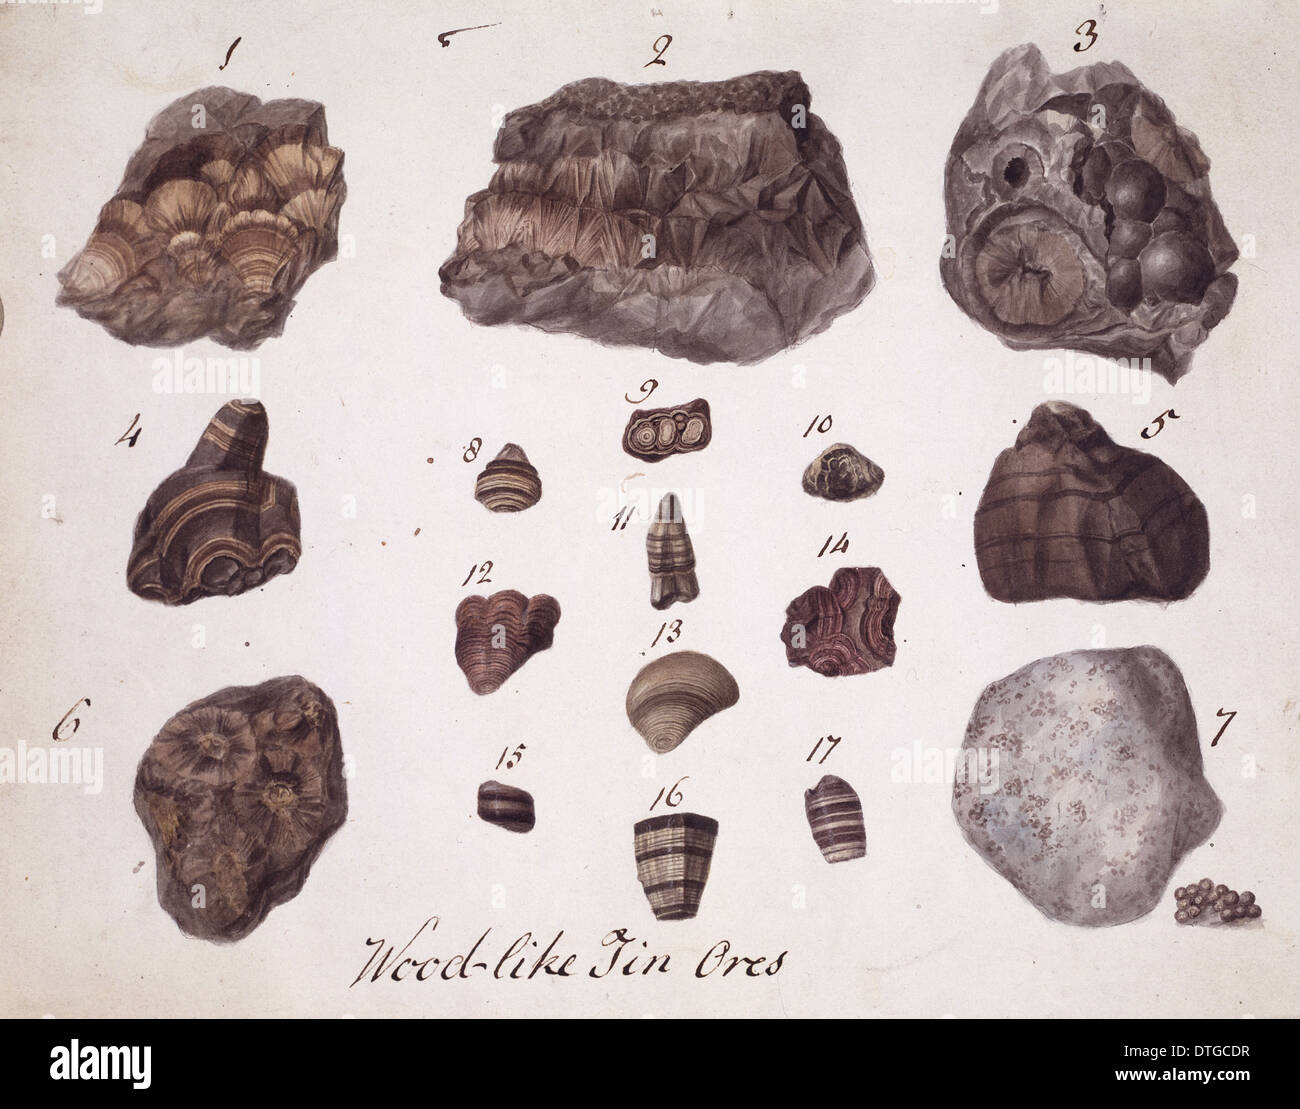 Planche 1 de spécimens de minéraux britannique ? Tome 1 par P. Rashleigh (1797) Banque D'Images